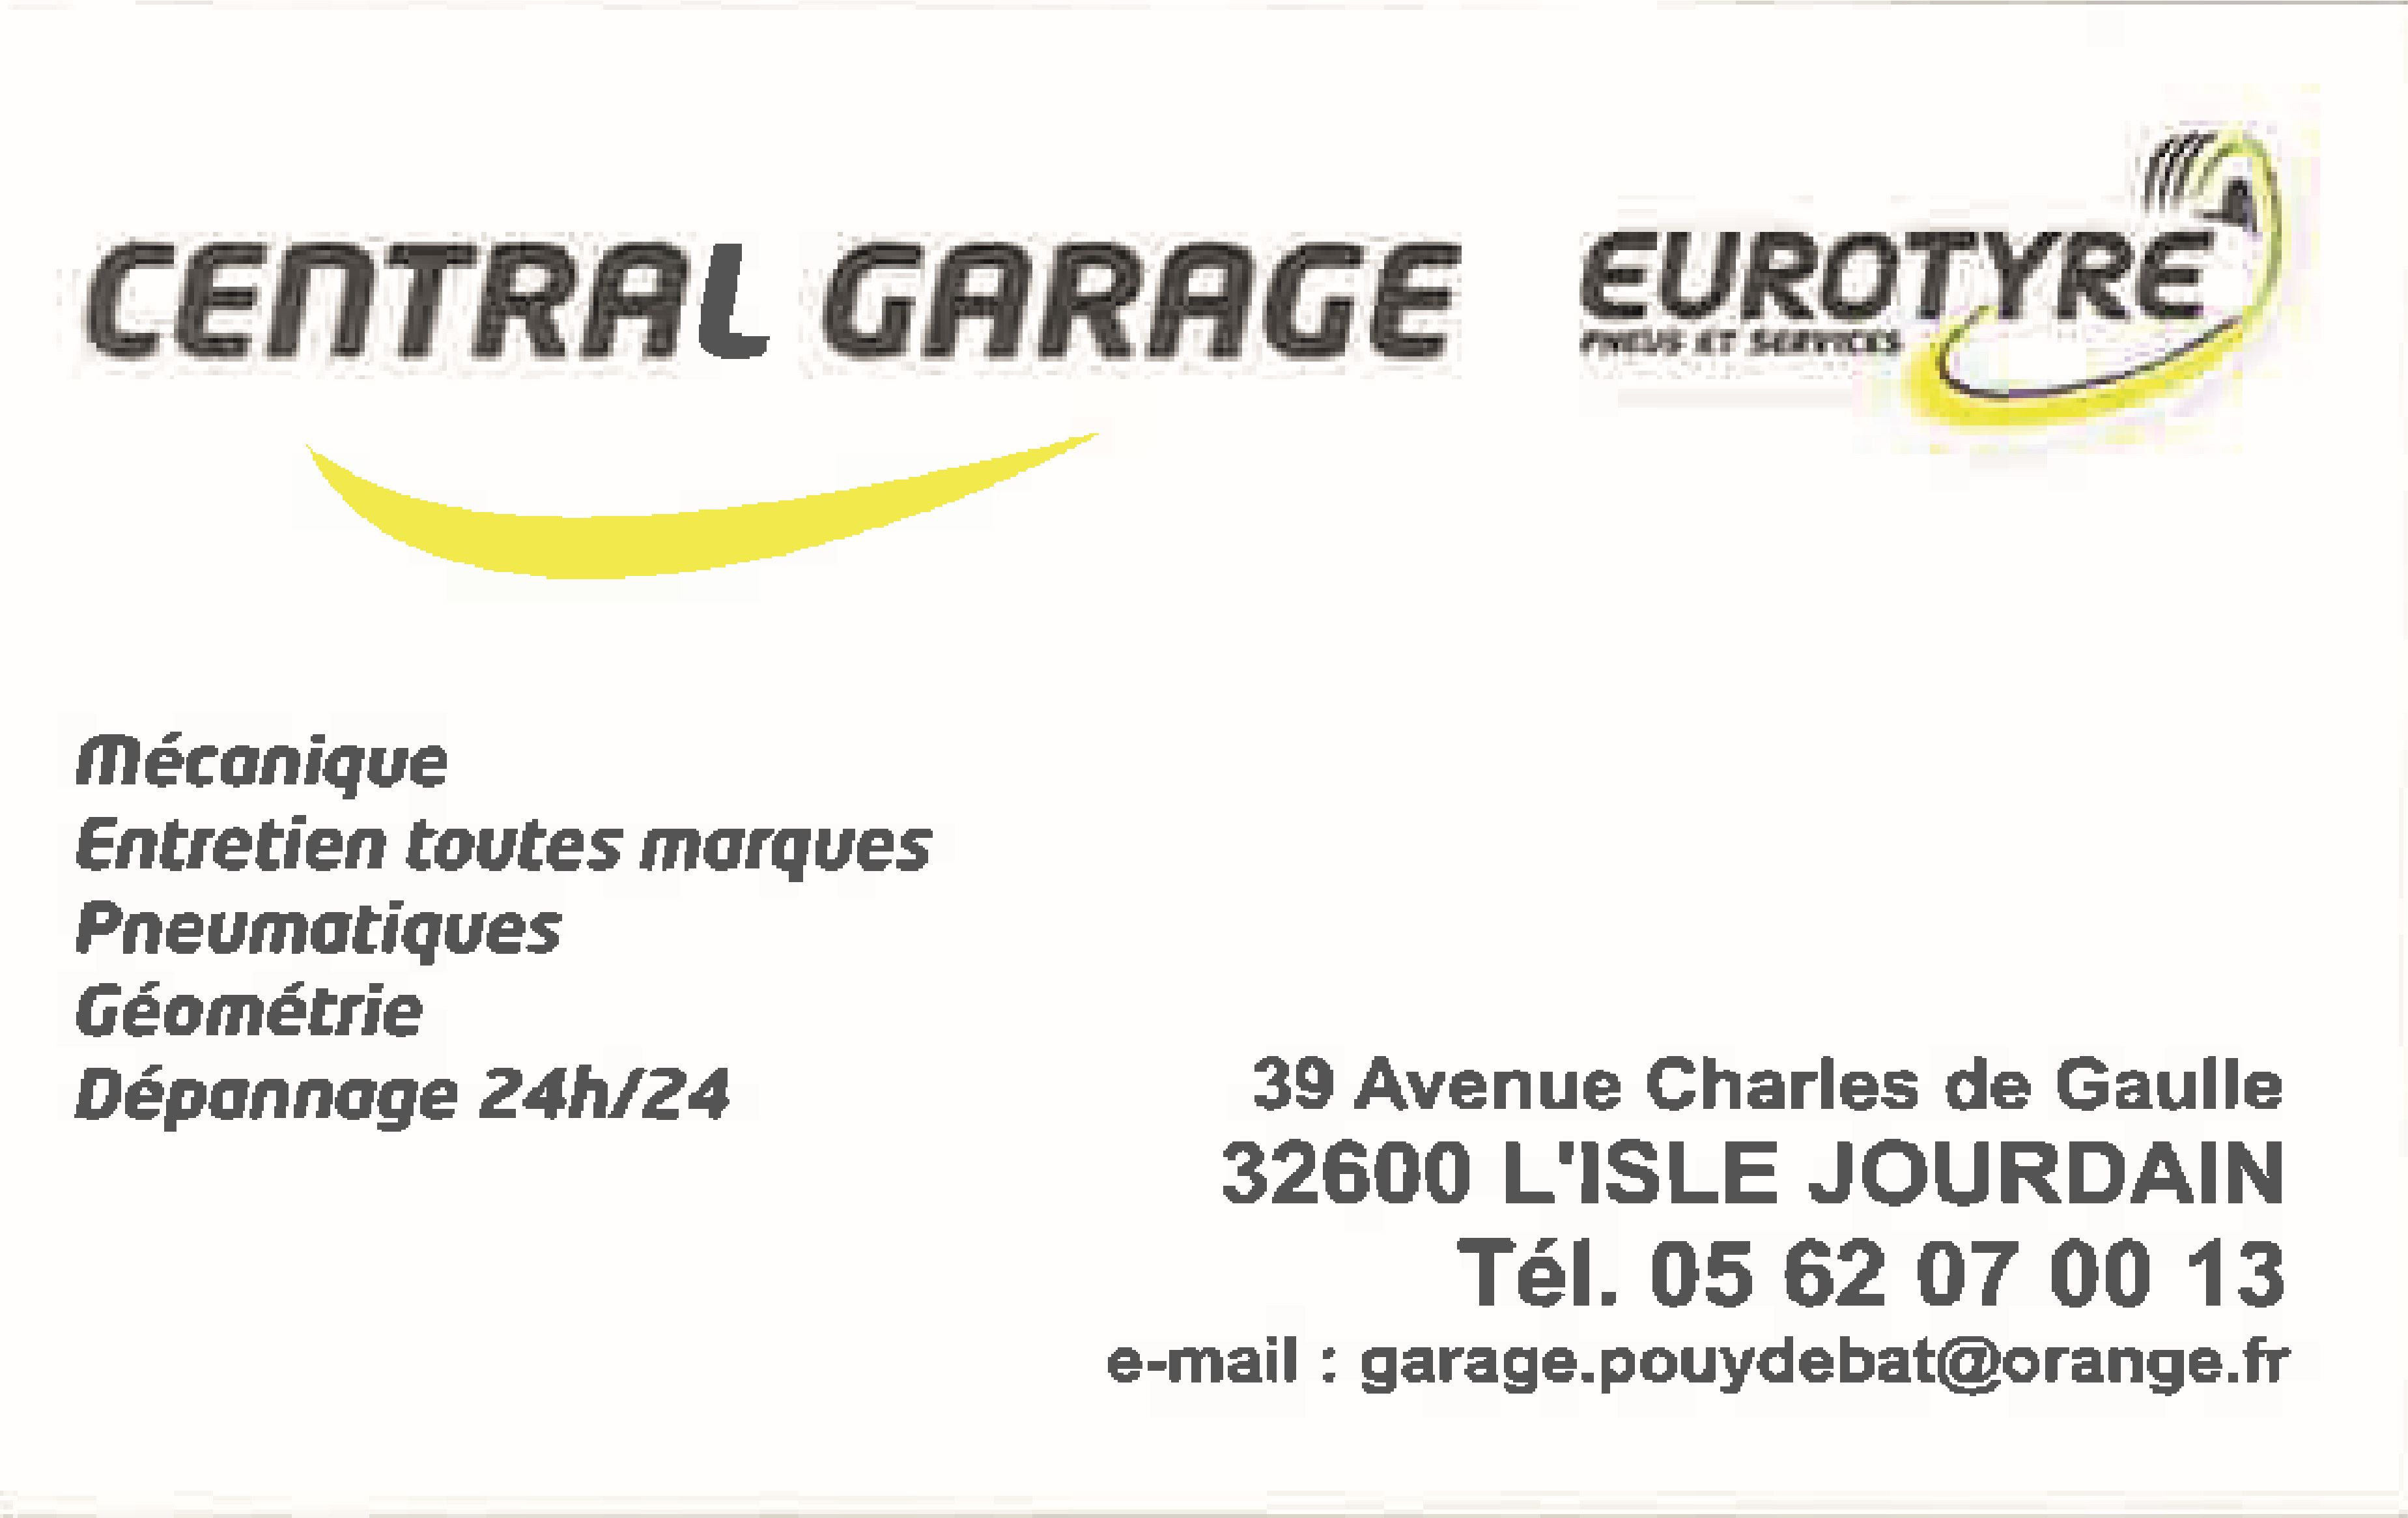 Central Garage Eurotyre